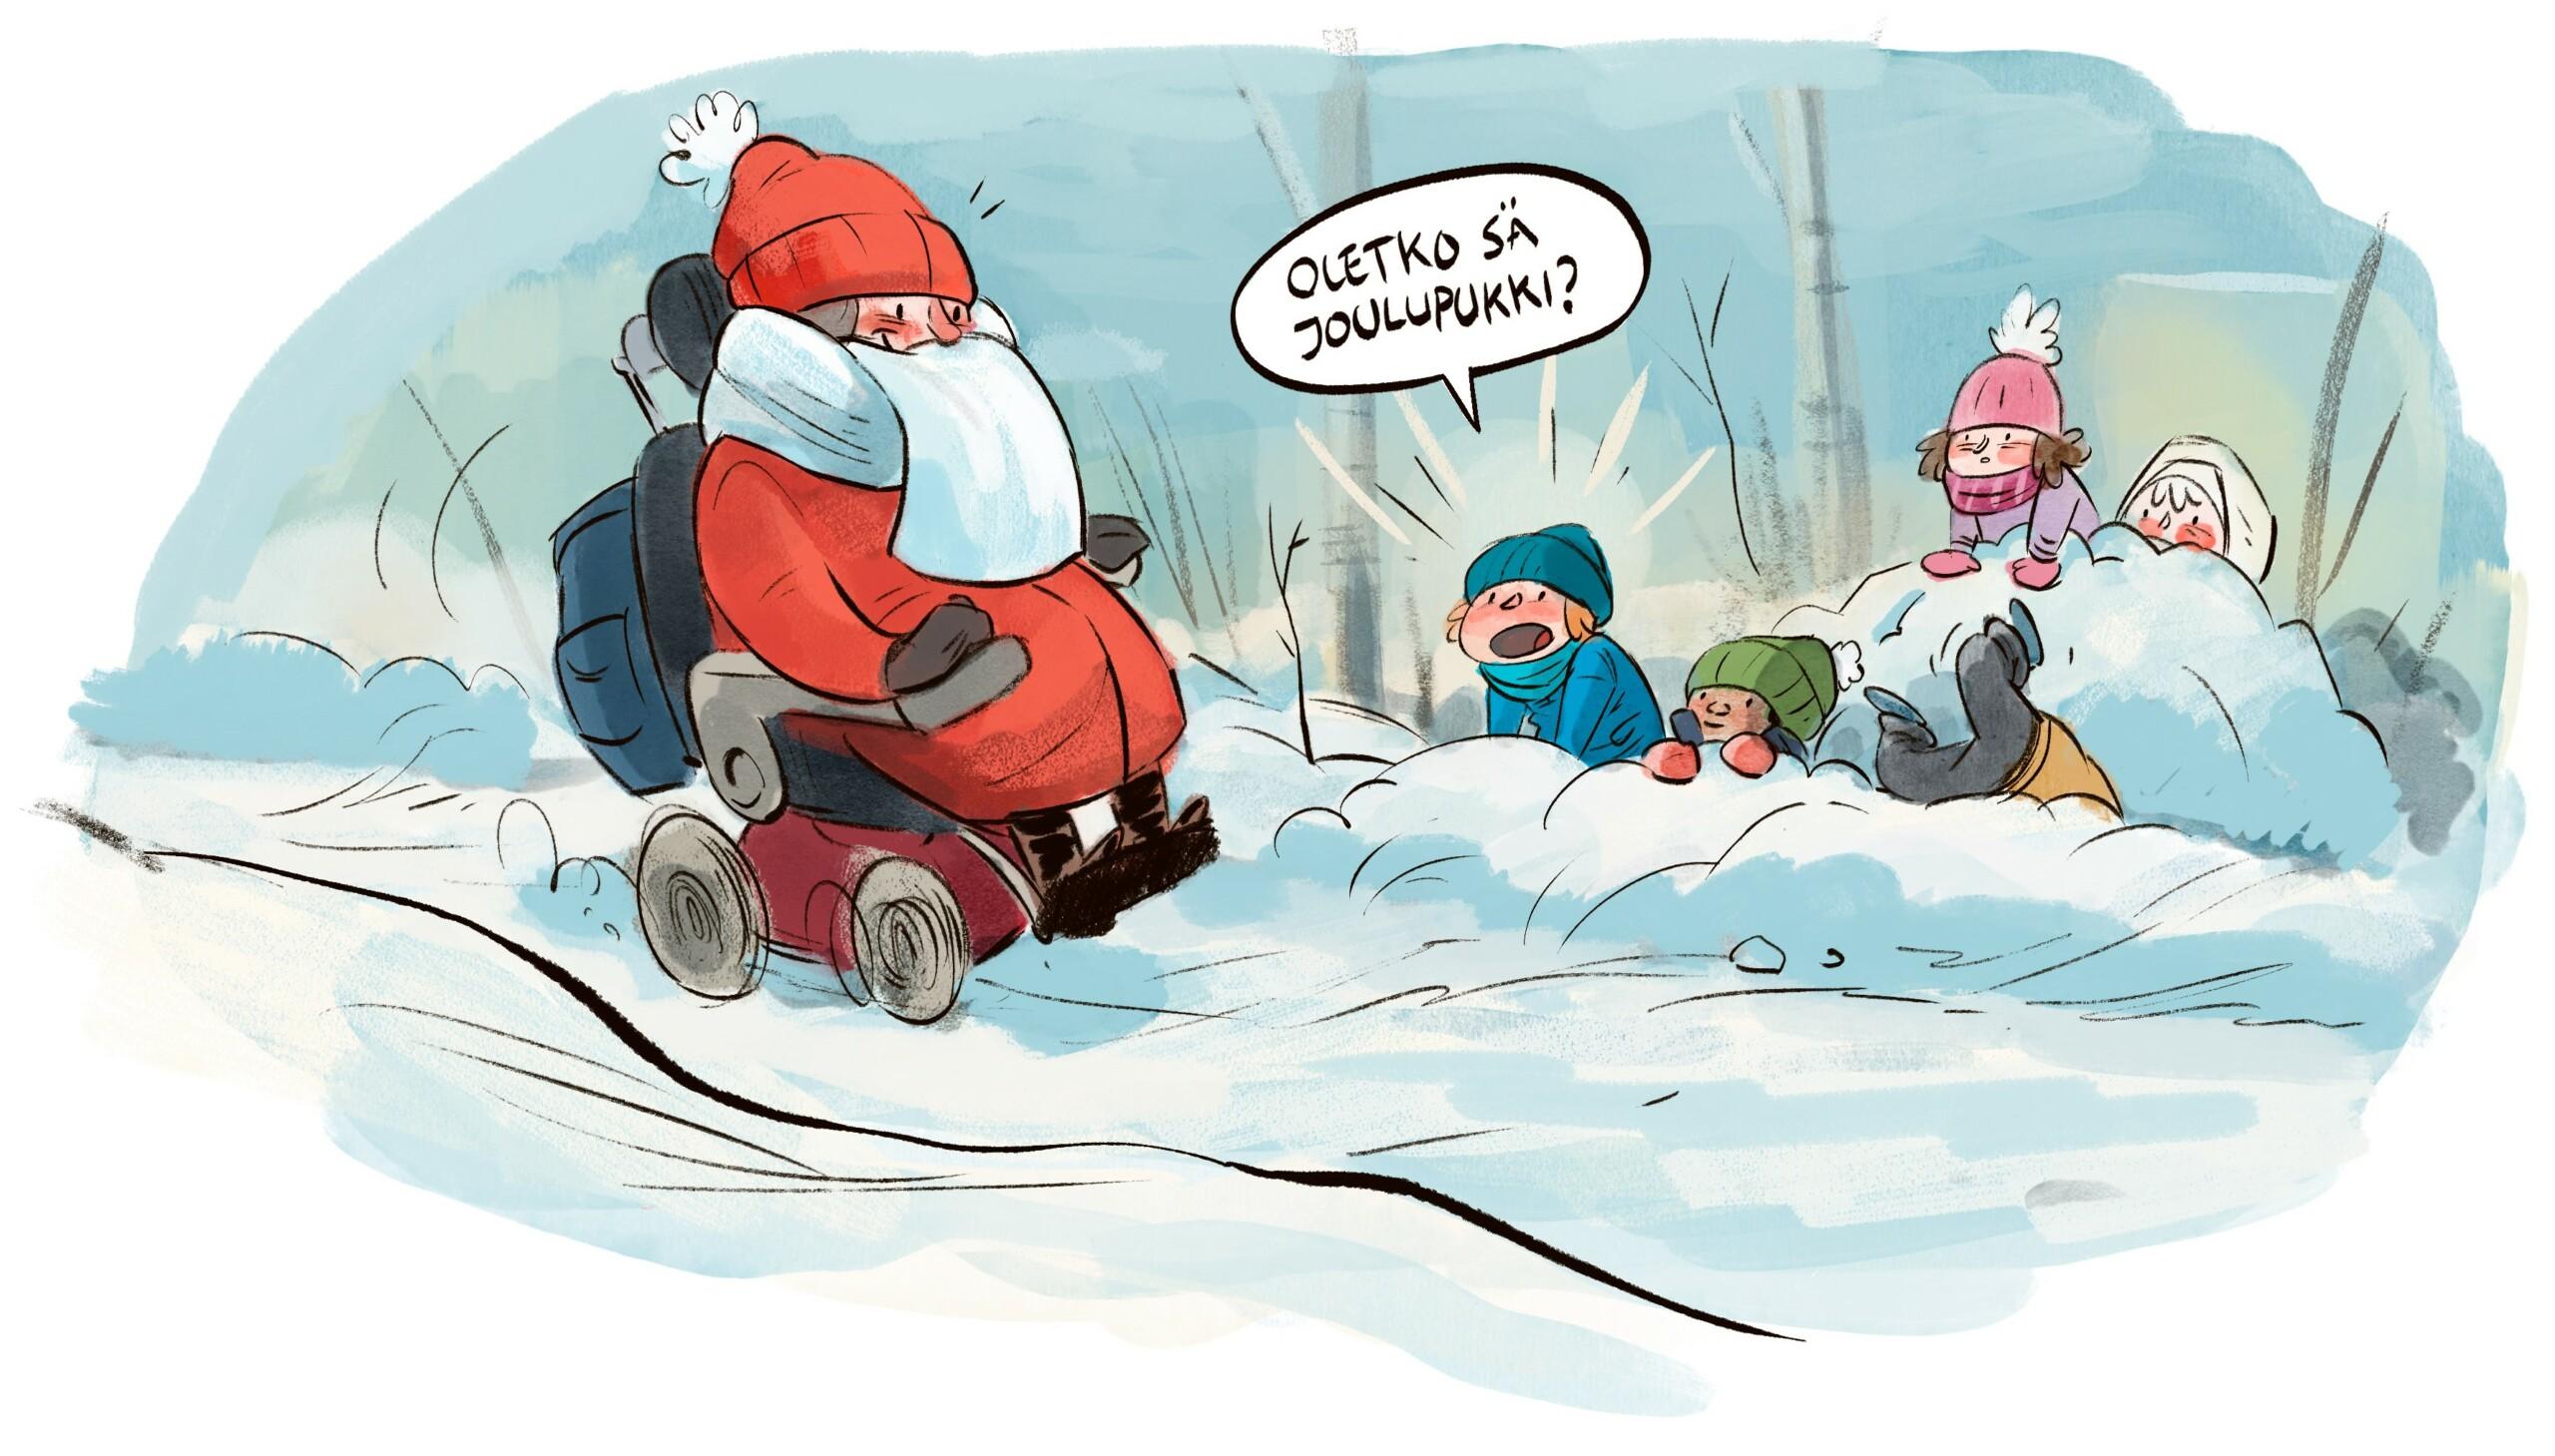 Piirroskuvassa nainen punaisissa toppavaatteissa sähköpyörätuolissa. Leikkivä lapsi lumihangessa kysyy "Oletko sä joulupukki?"